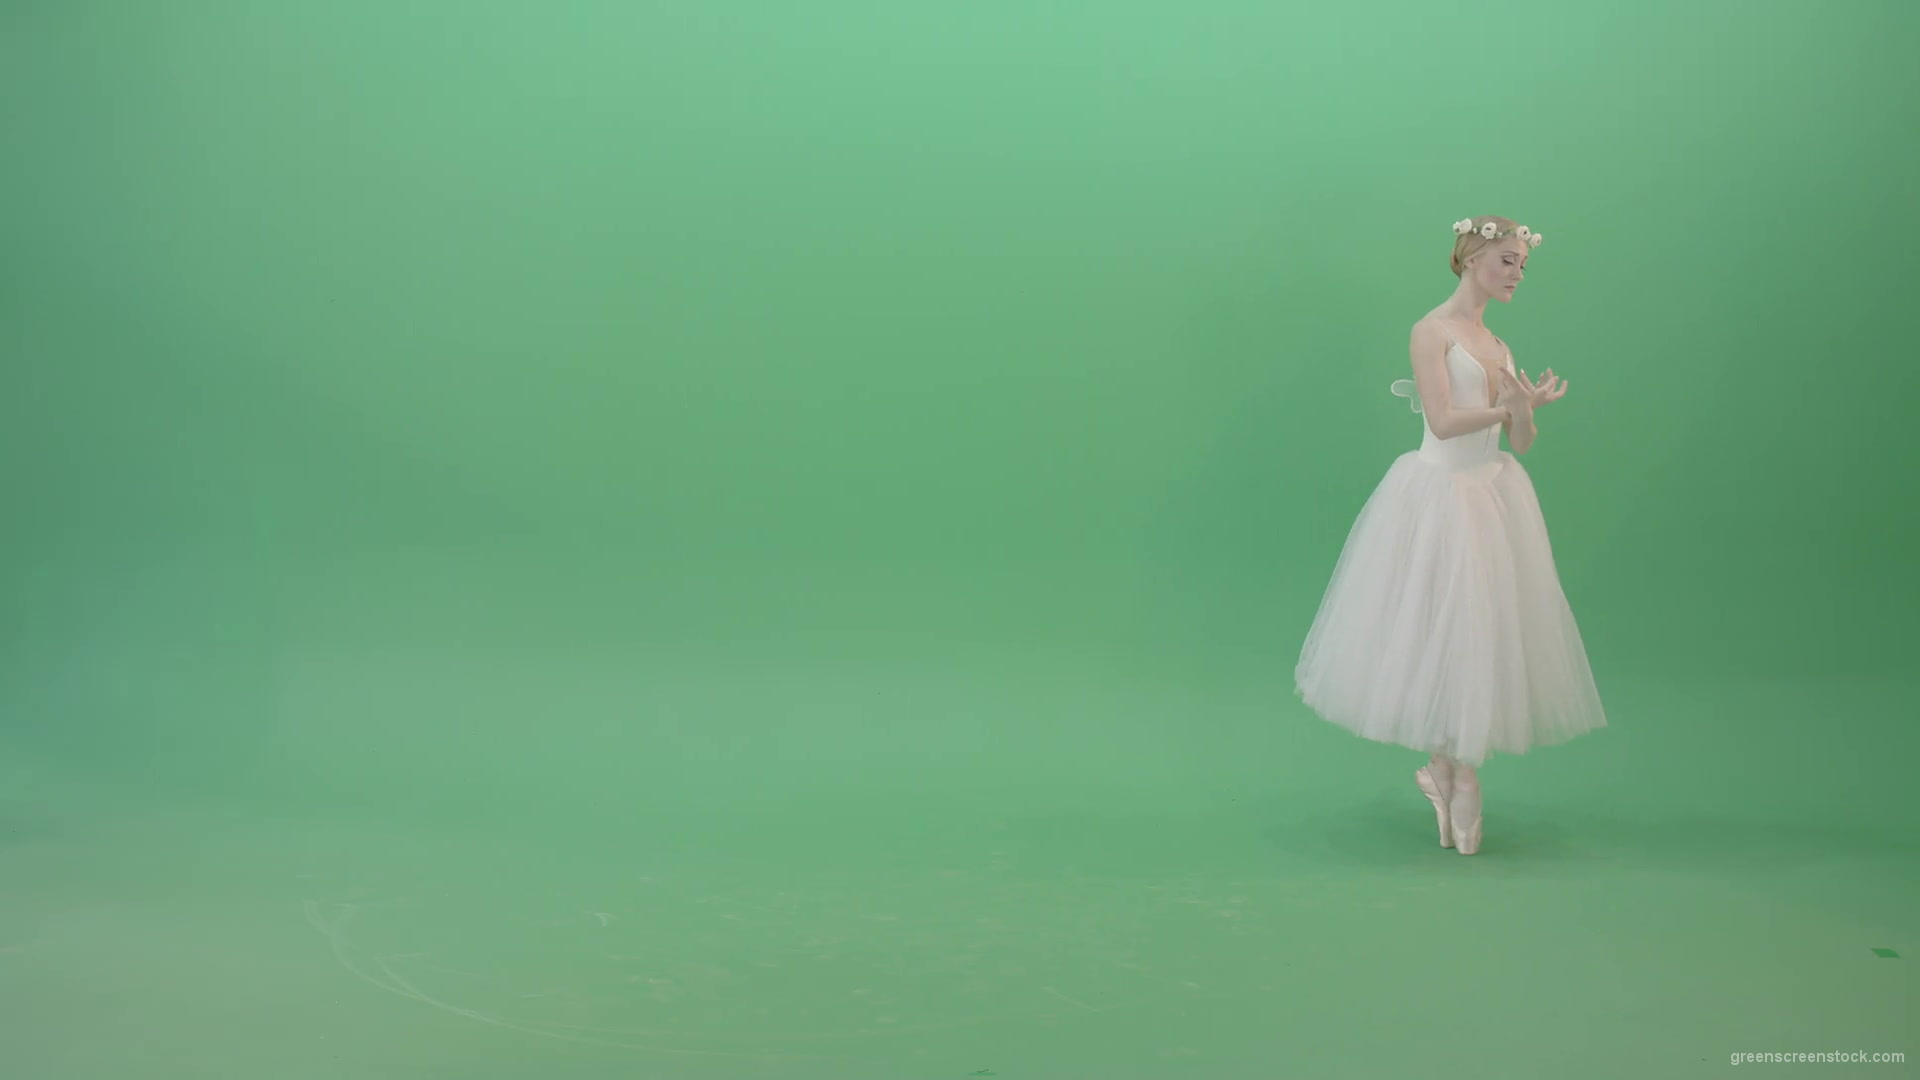 Elegant-Ballerina-Ballet-Girl-posing-for-Advertising-packshot-4K-Video-Footage-1920_002 Green Screen Stock